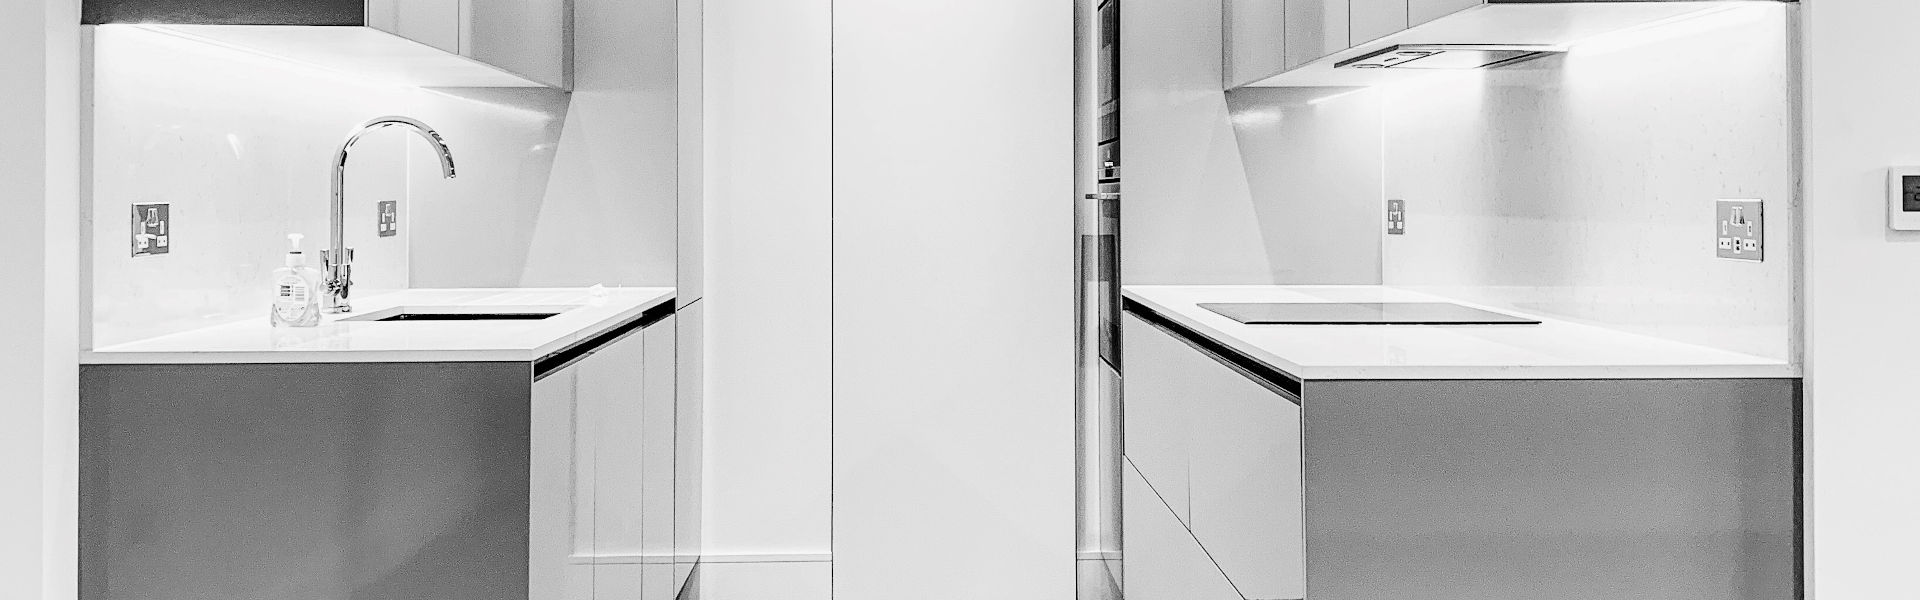 clear white kitchen